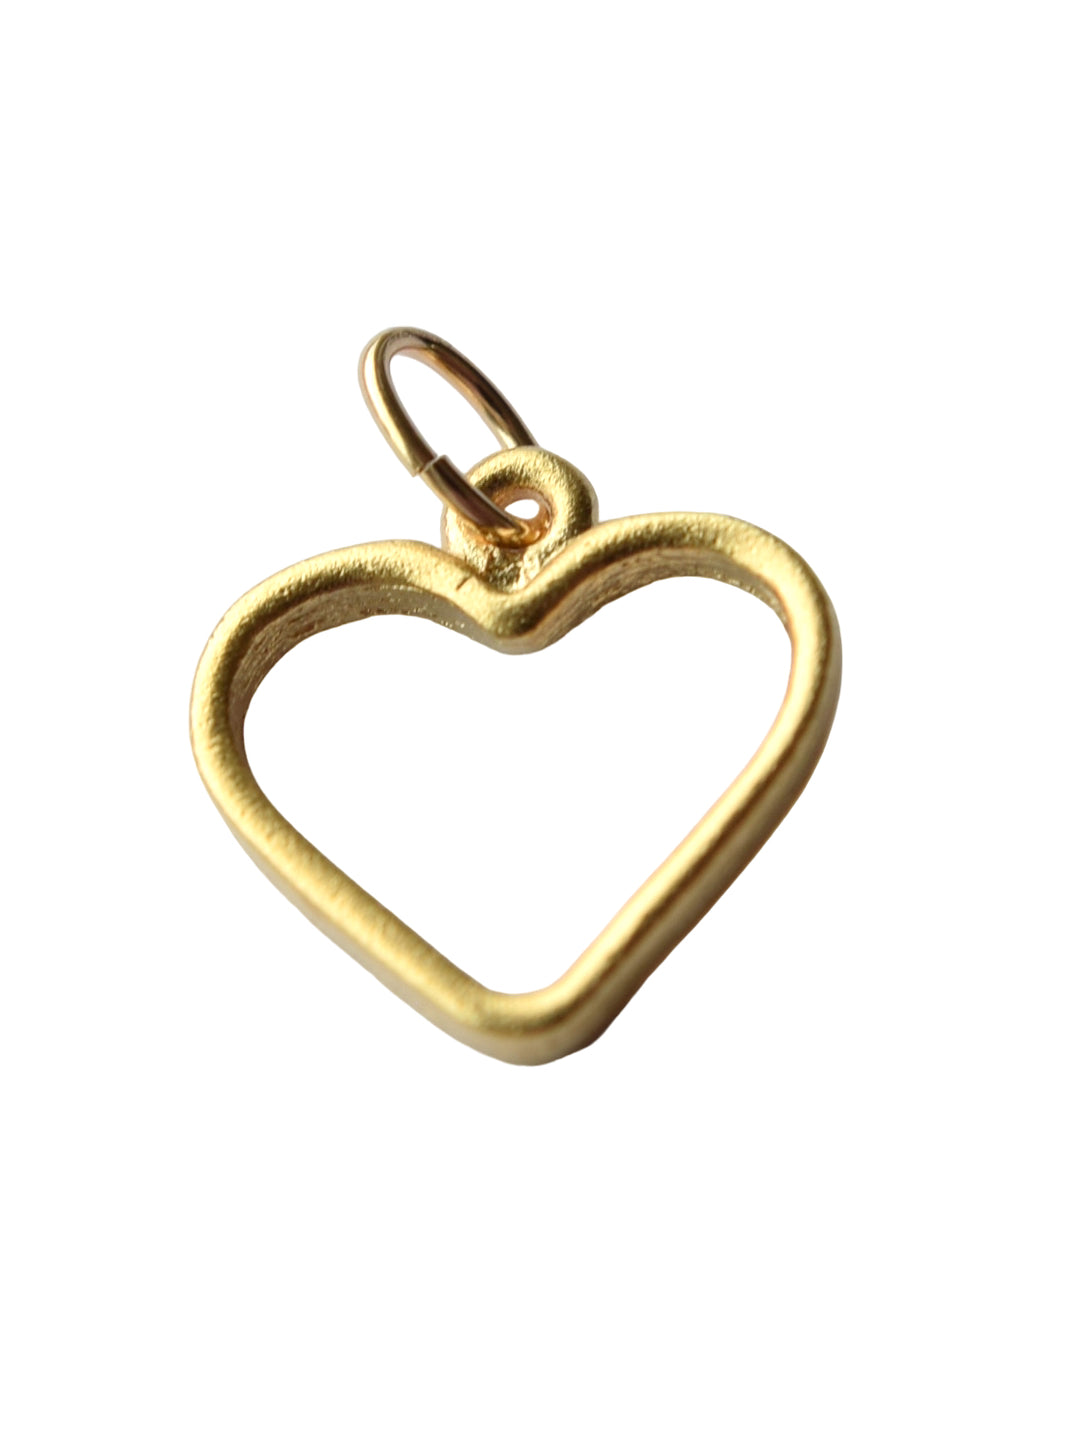 Farrah B - Gold Open Heart Charm